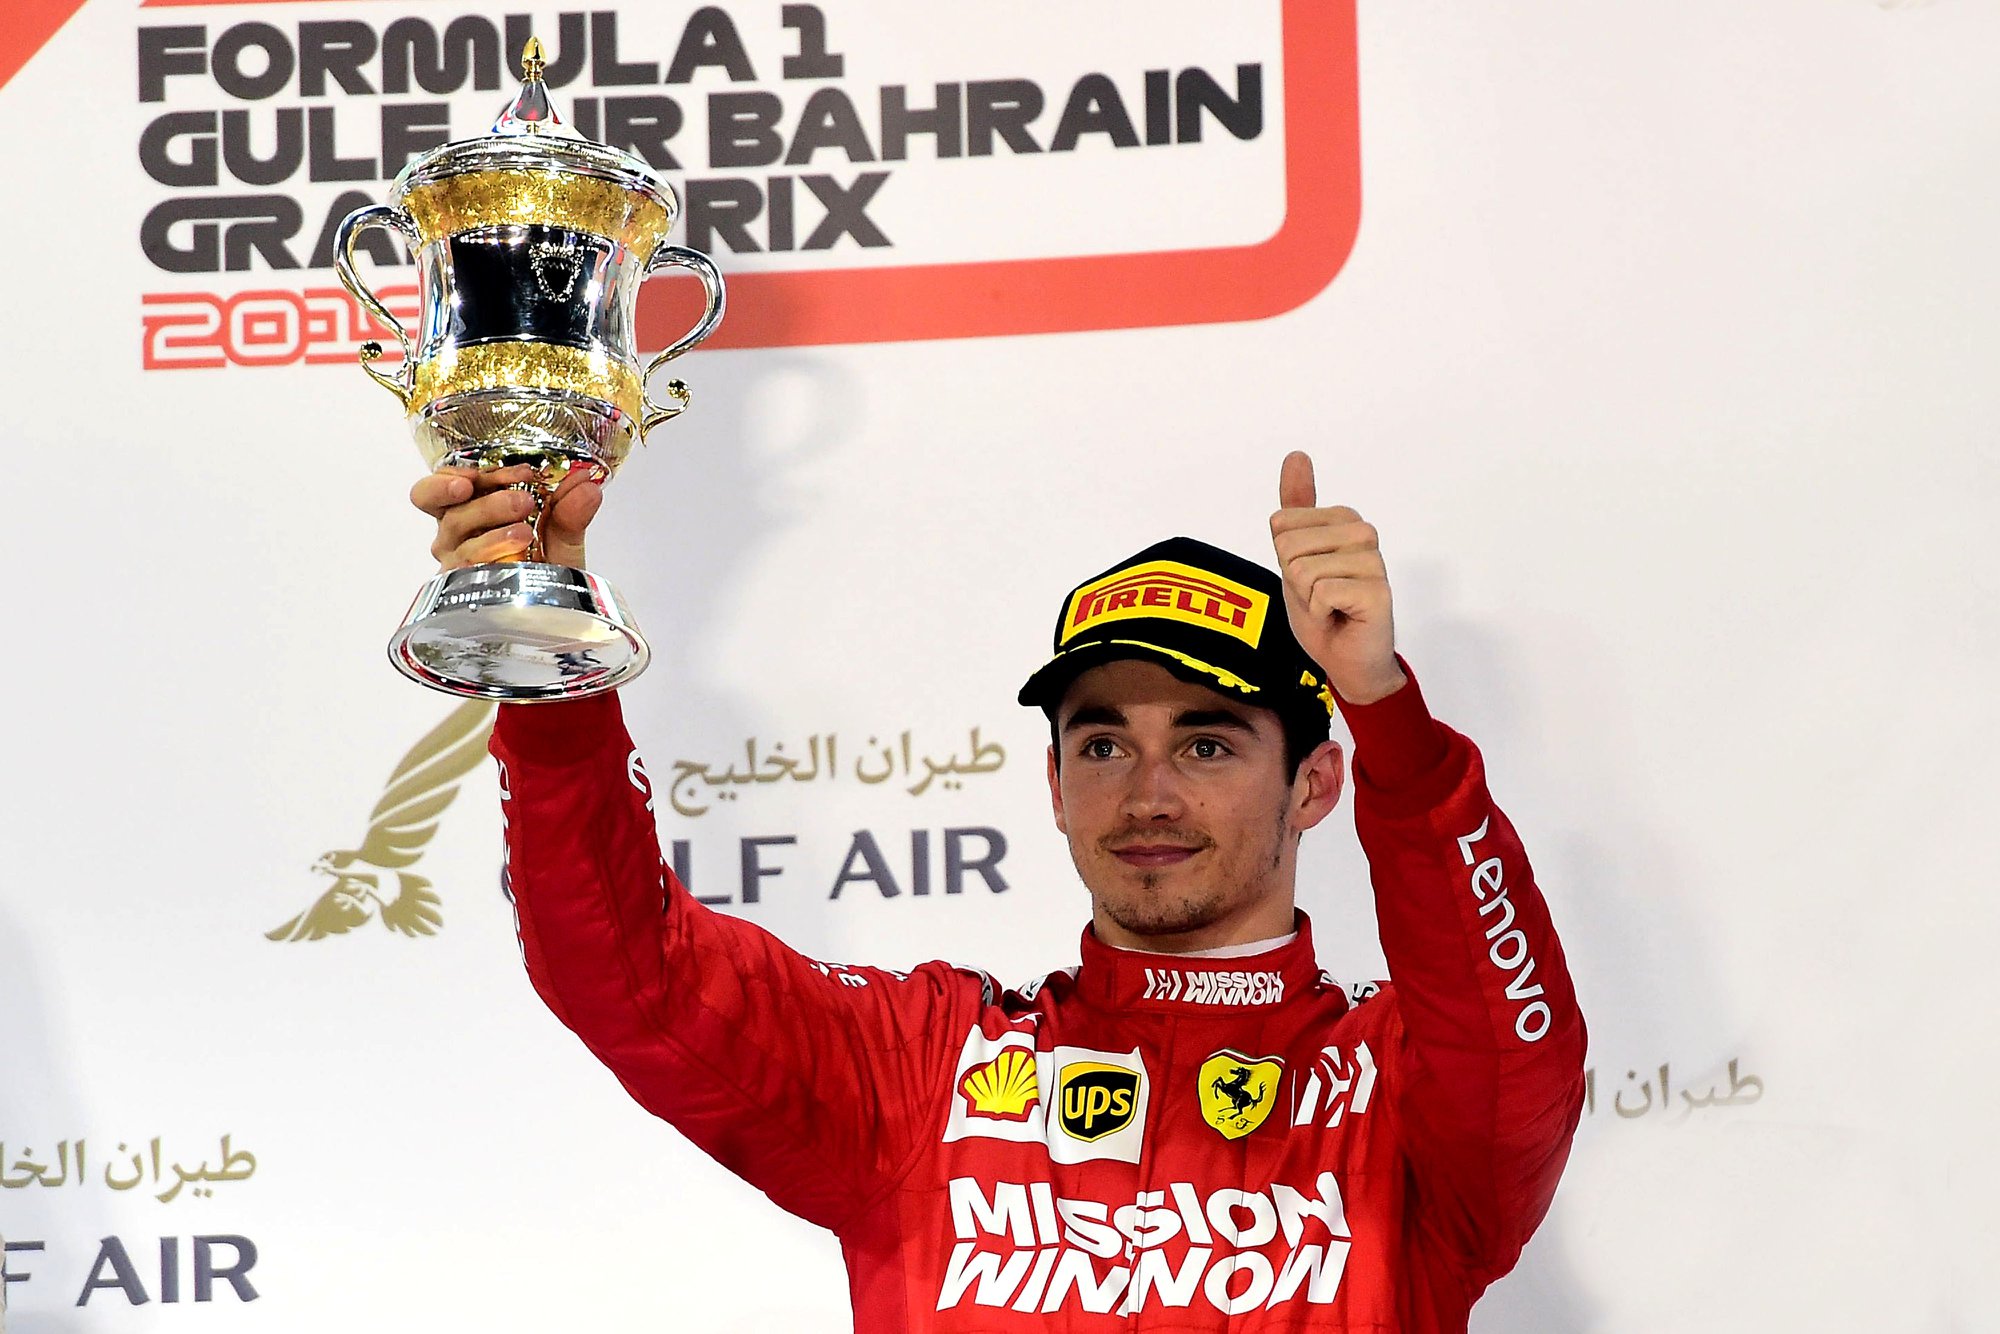 C. Leclercas Bahreine nepaisė komandos nurodymų nelenkti S. Vettelio